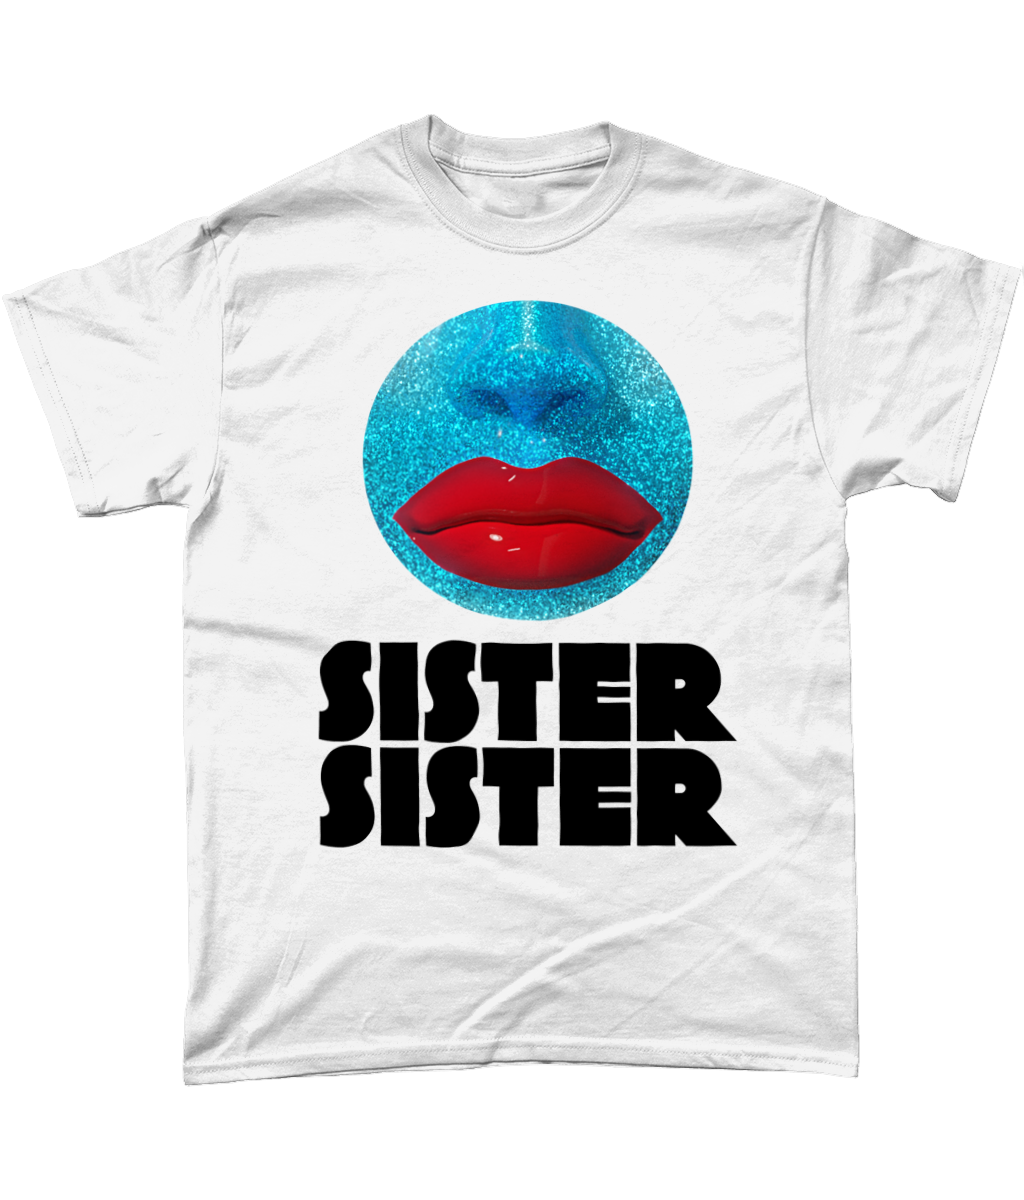 Sister Sister - Orb T-Shirt